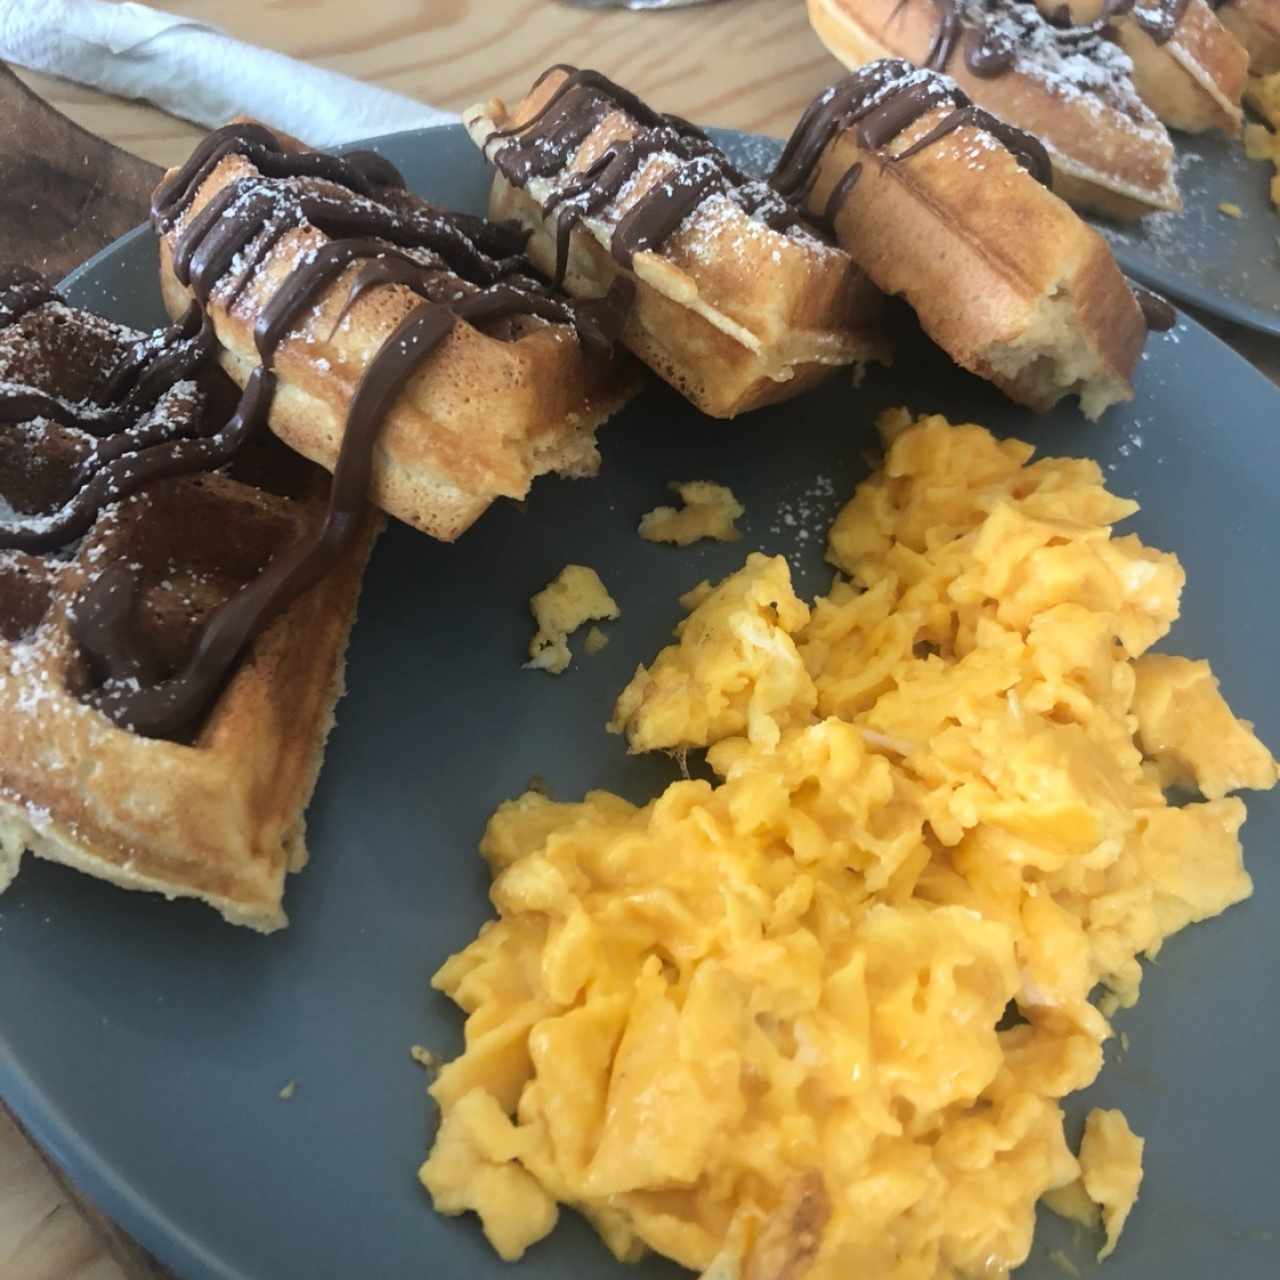 waffles con nutella y huevos revueltos 